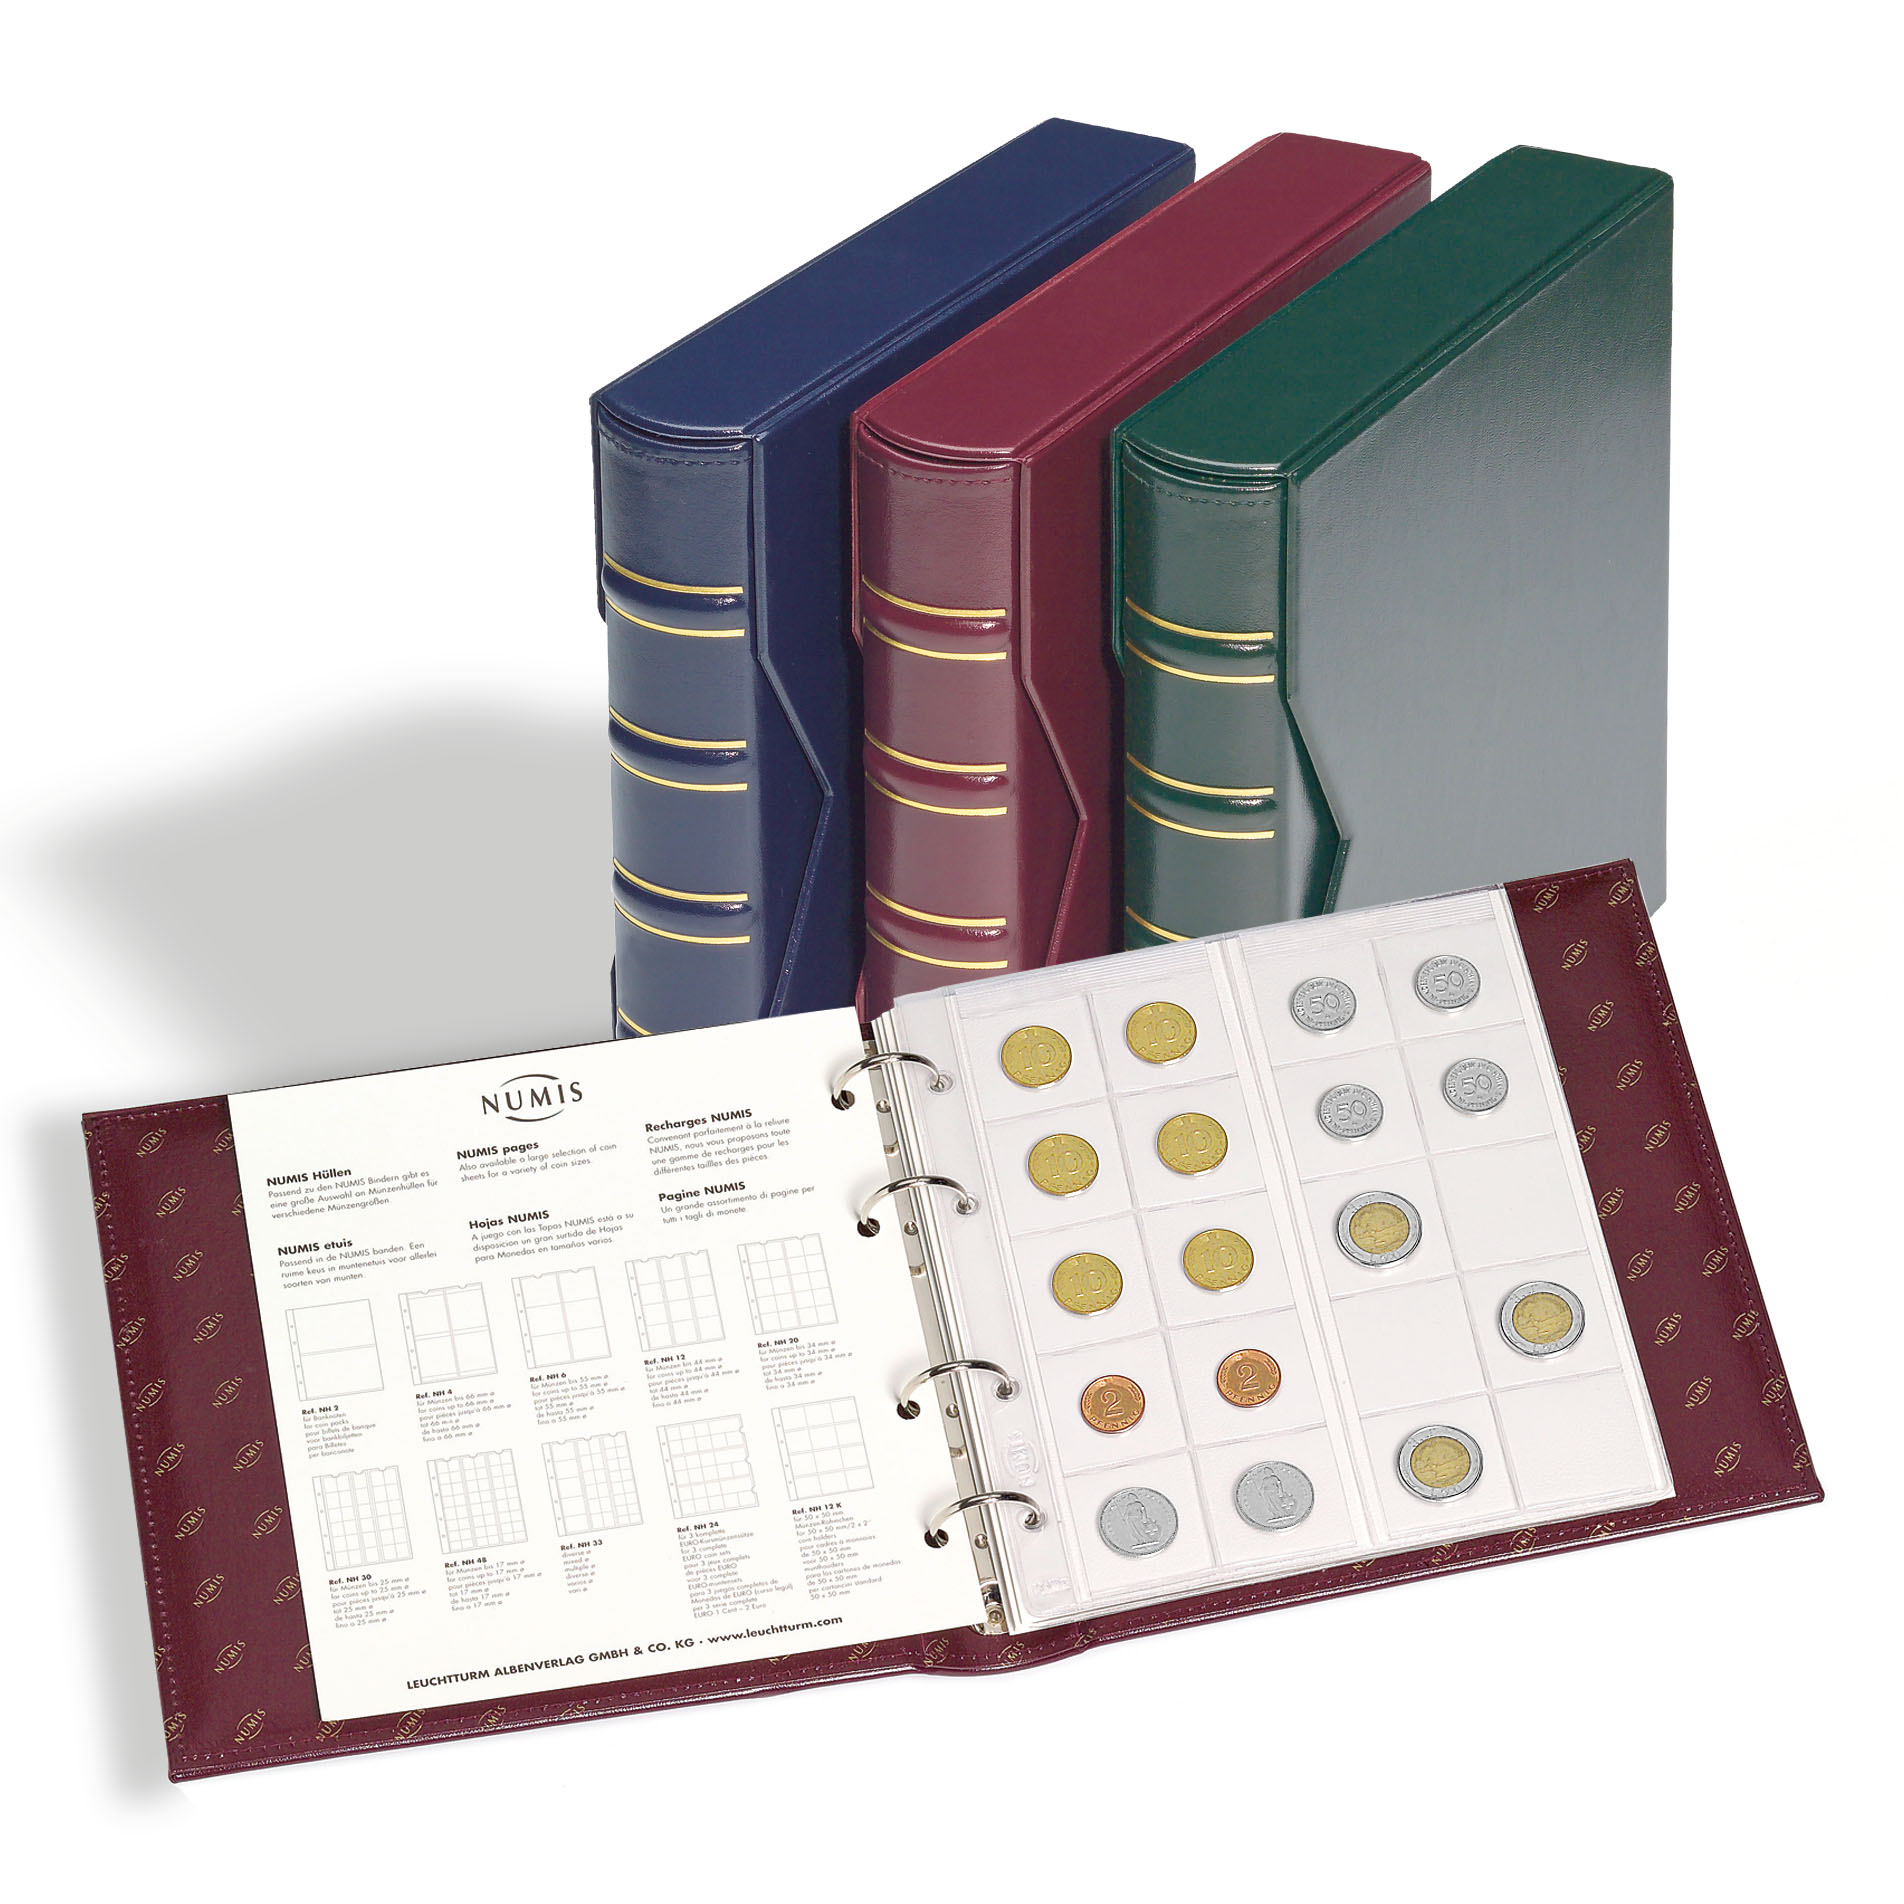 Альбом для монет с 5 листами с защитным шубером, формат "Numis", Красный, Классический дизайн, LEUCHTTURM, 327836 — Фото №2